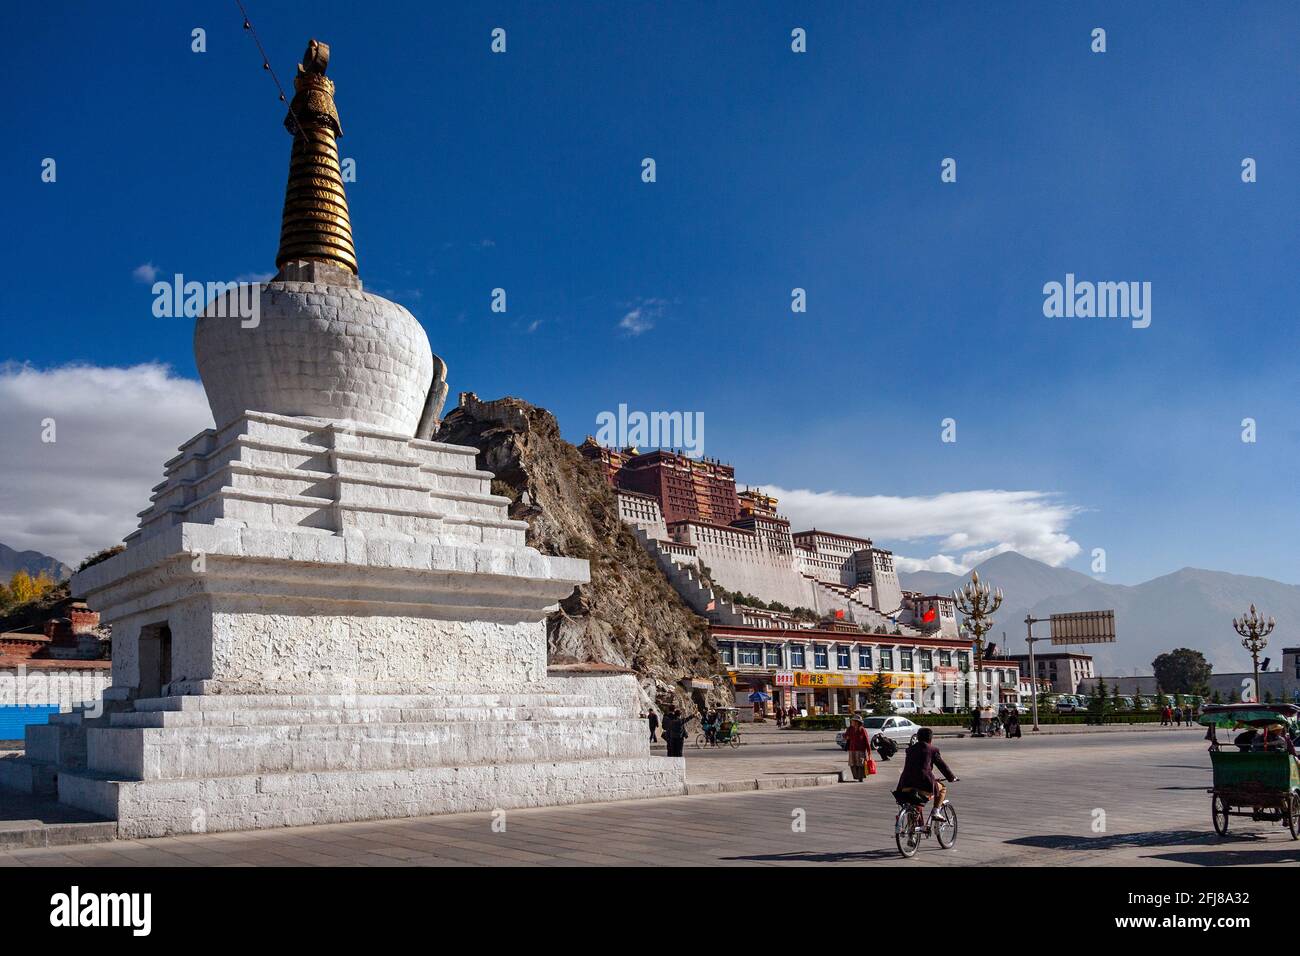 Buddhistische Stupa in der Nähe des Potala-Palastes, einer Dzong-Festung in der Stadt Lhasa in Tibet. Es war der Winterpalast der Dalai Lamas von 1649 bis 1959. Stockfoto